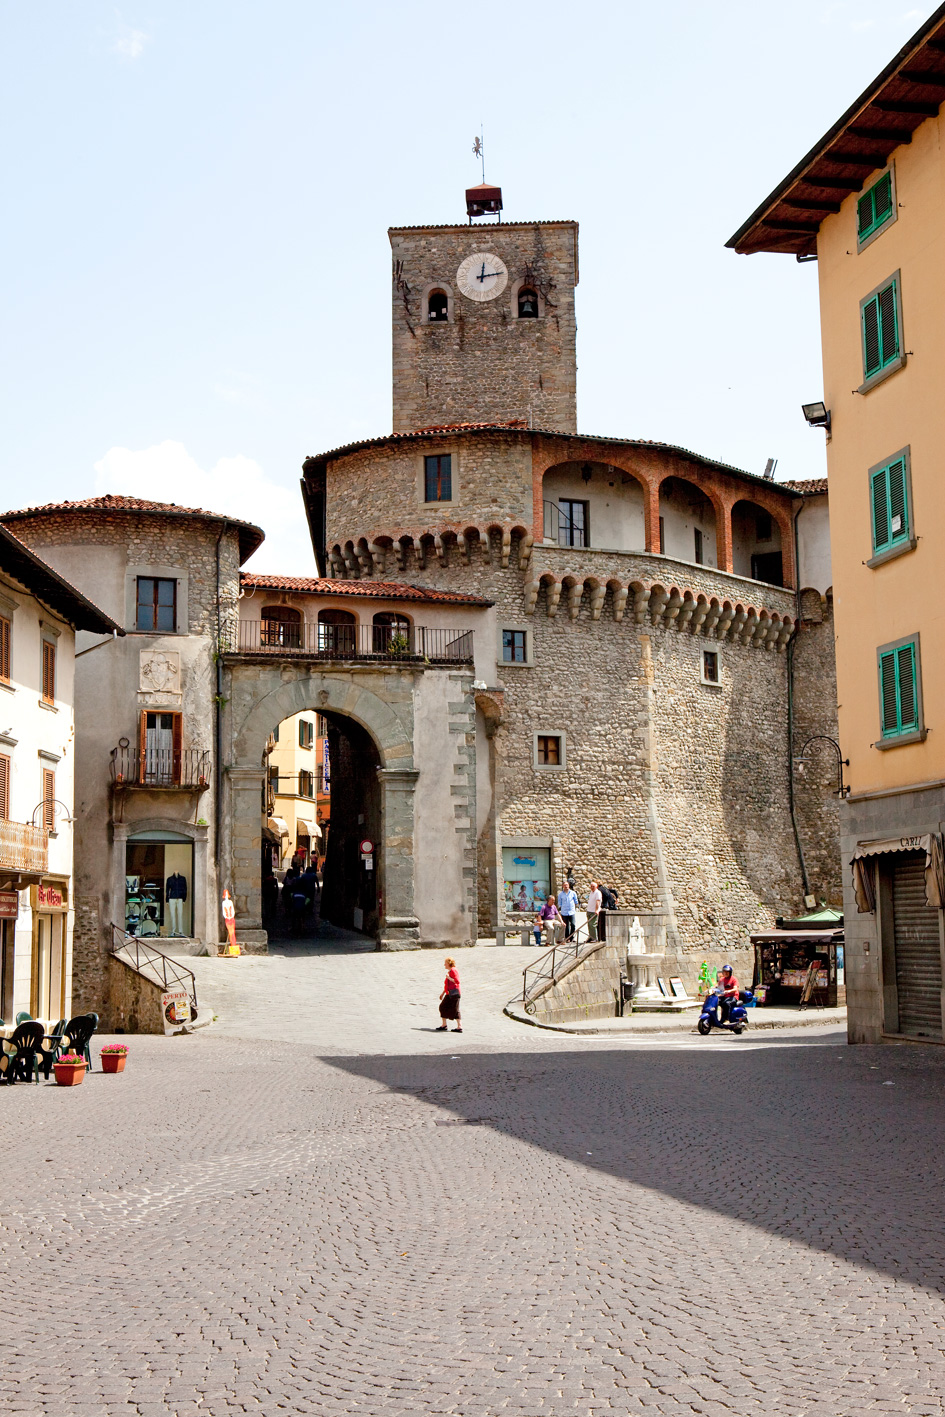 The Rocca Ariostesca of Castelnuovo Garfagnana